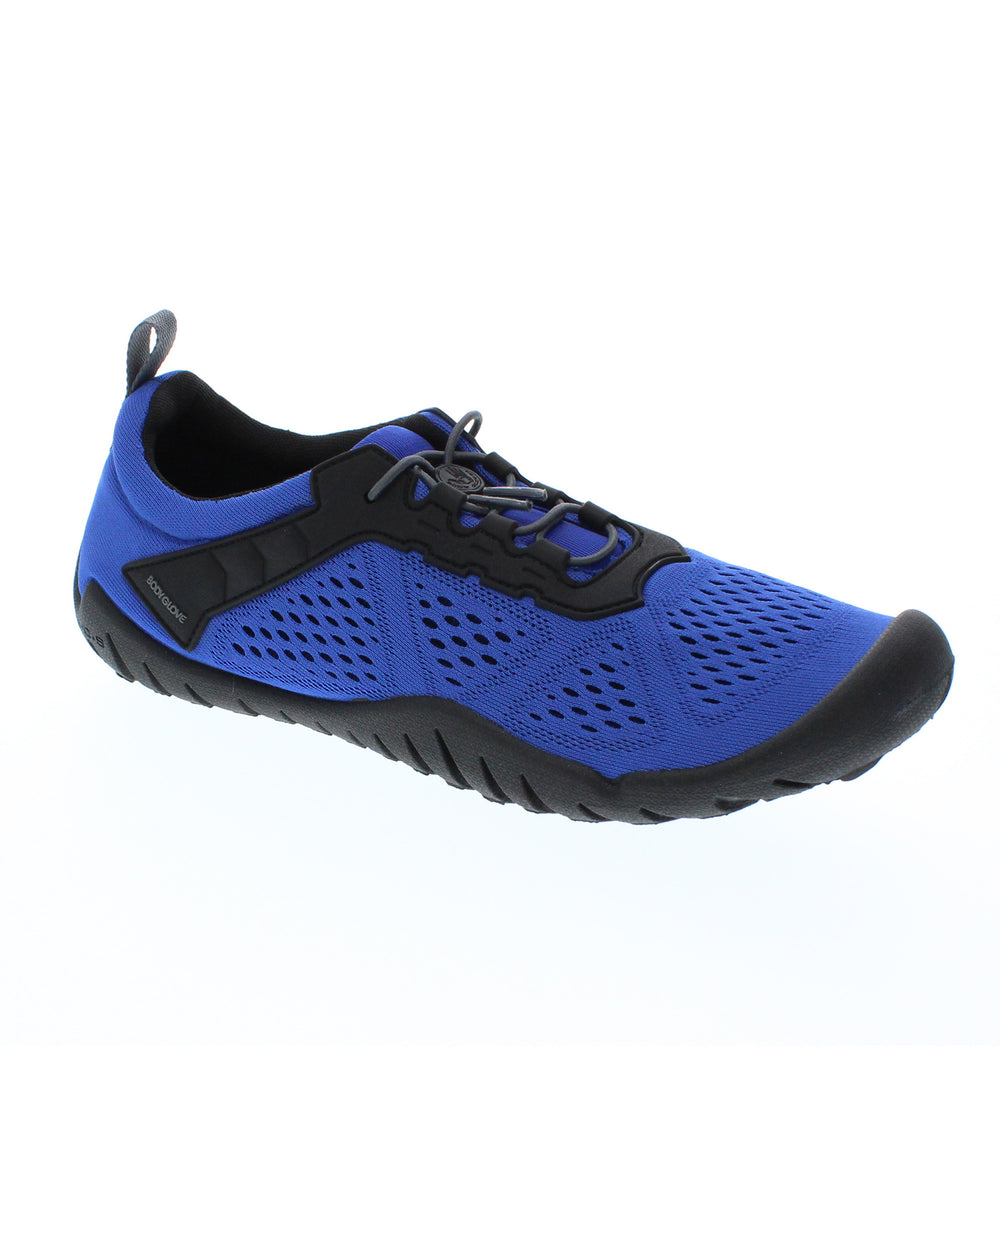 Men's Nautilus Water Shoes - Dazzling Blue/Black